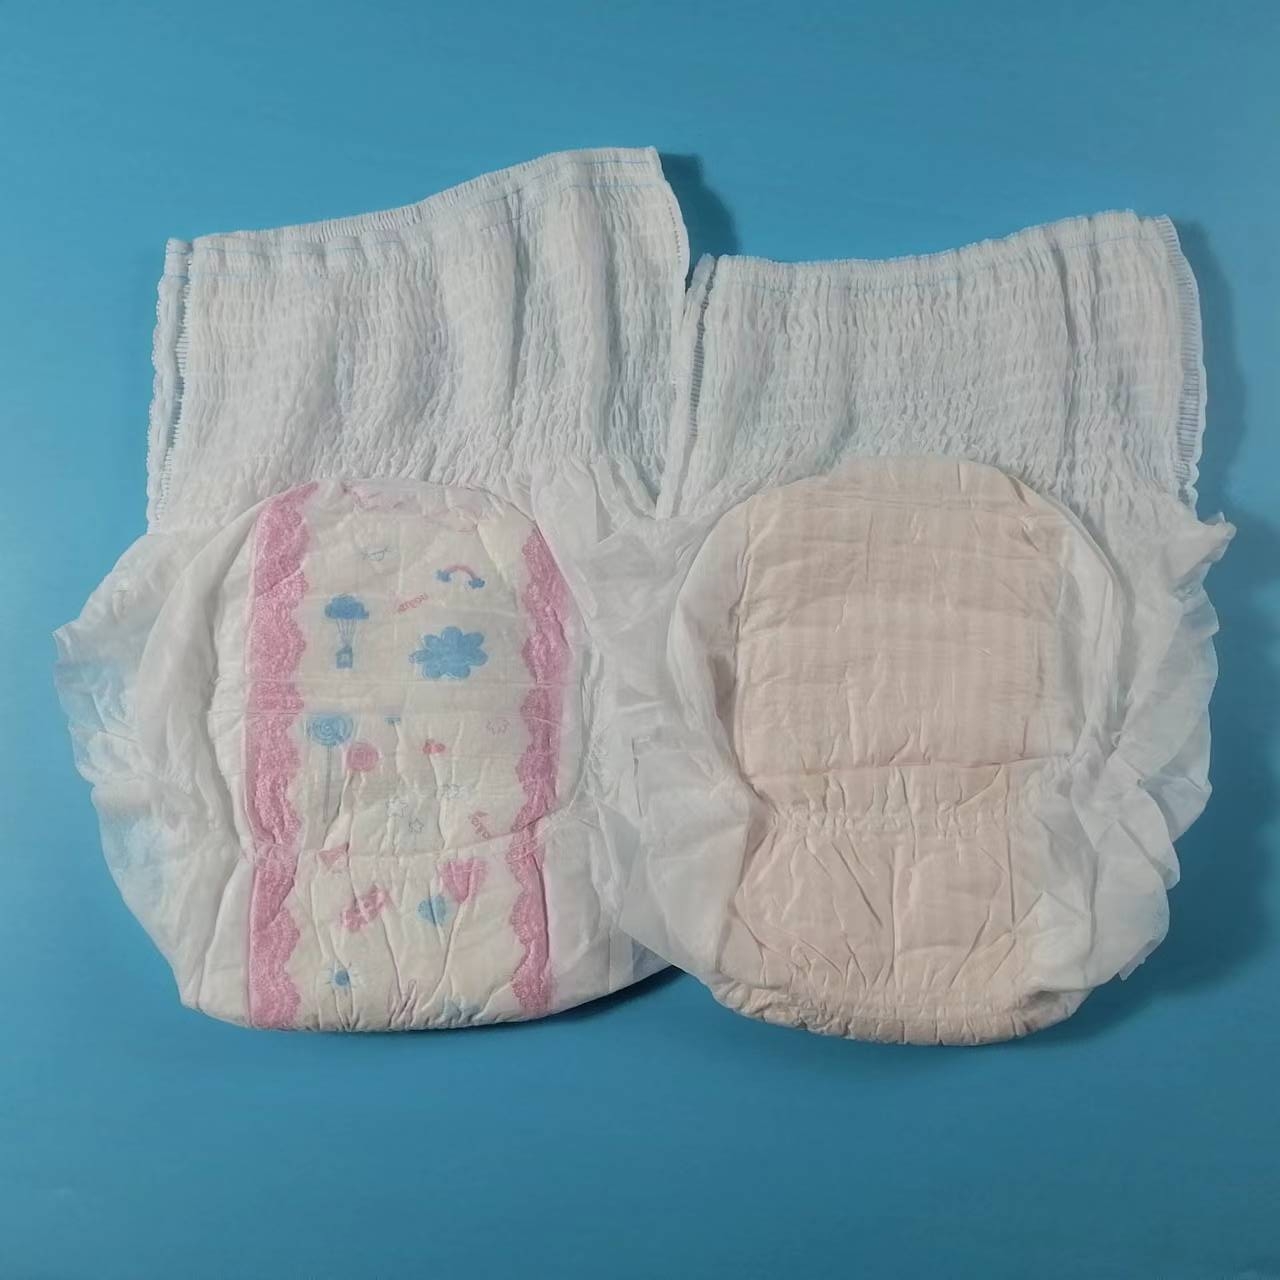 Alacsony ár Legjobb minőségű eldobható menstruációs nadrág egészségügyi betét típusú bugyi puha és egészséges felülettel Kiemelt kép